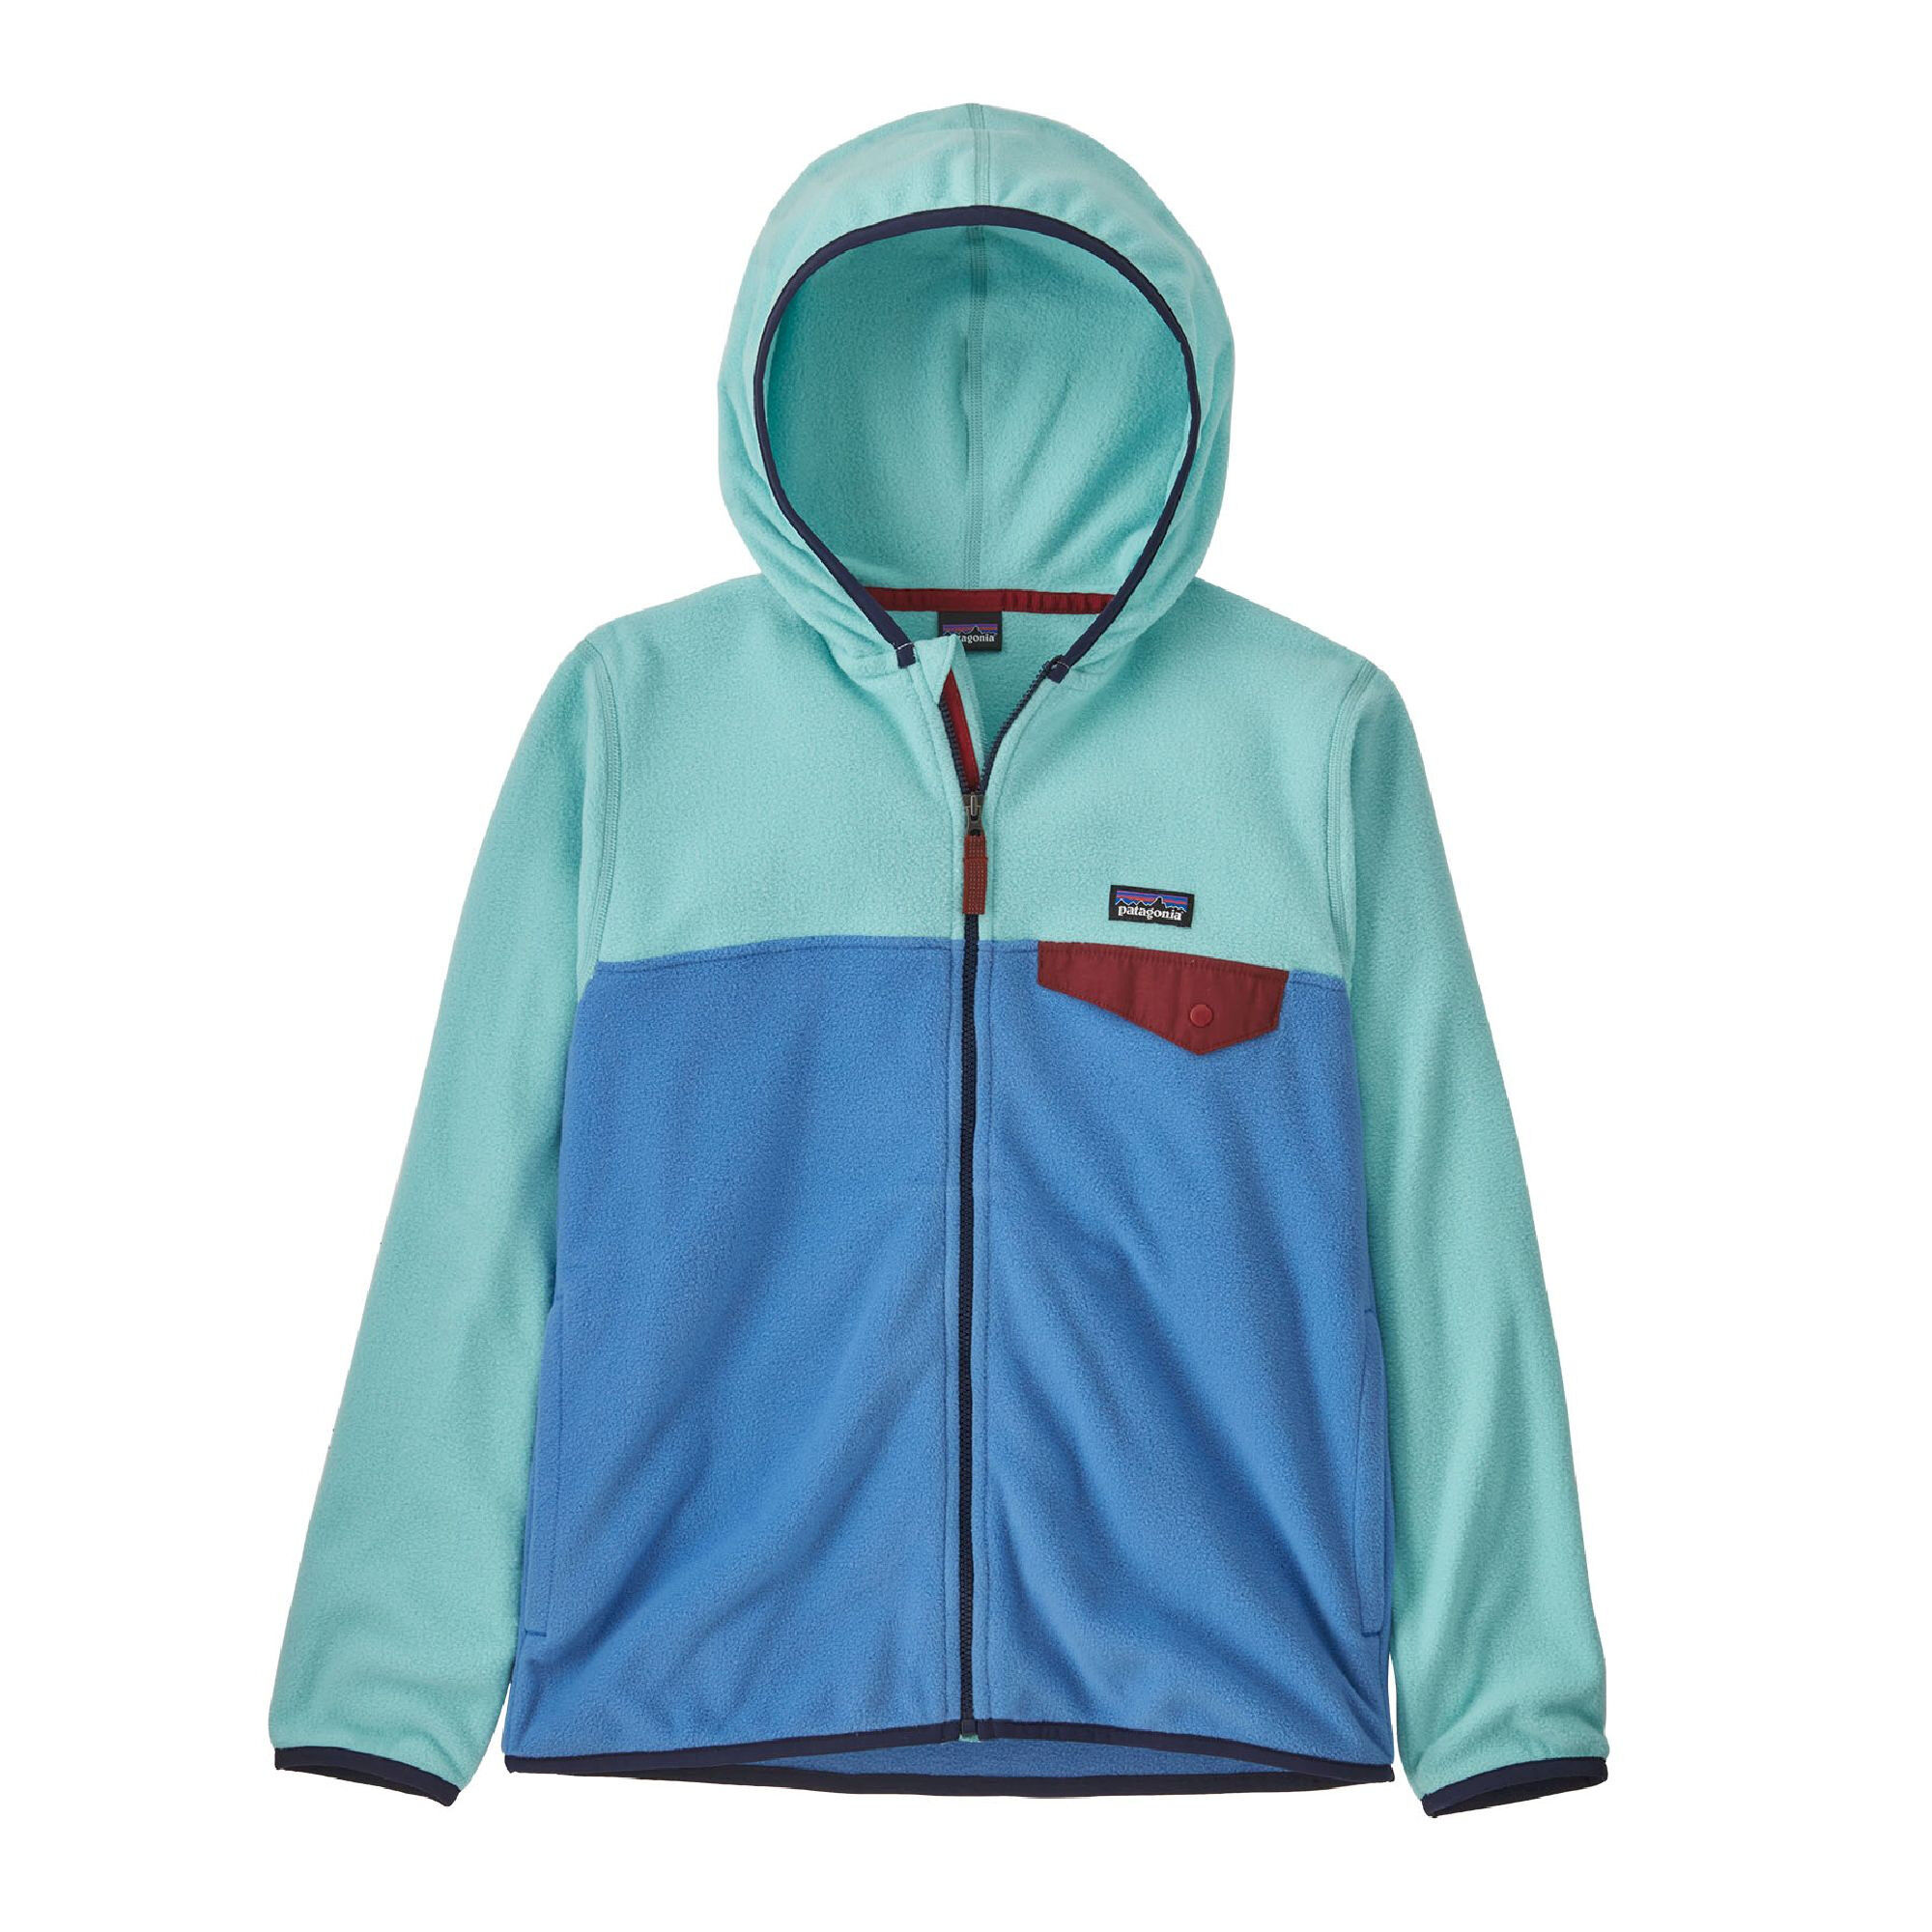 Patagonia Micro D Snap-T Jacket - Fleece jacket - Boys'